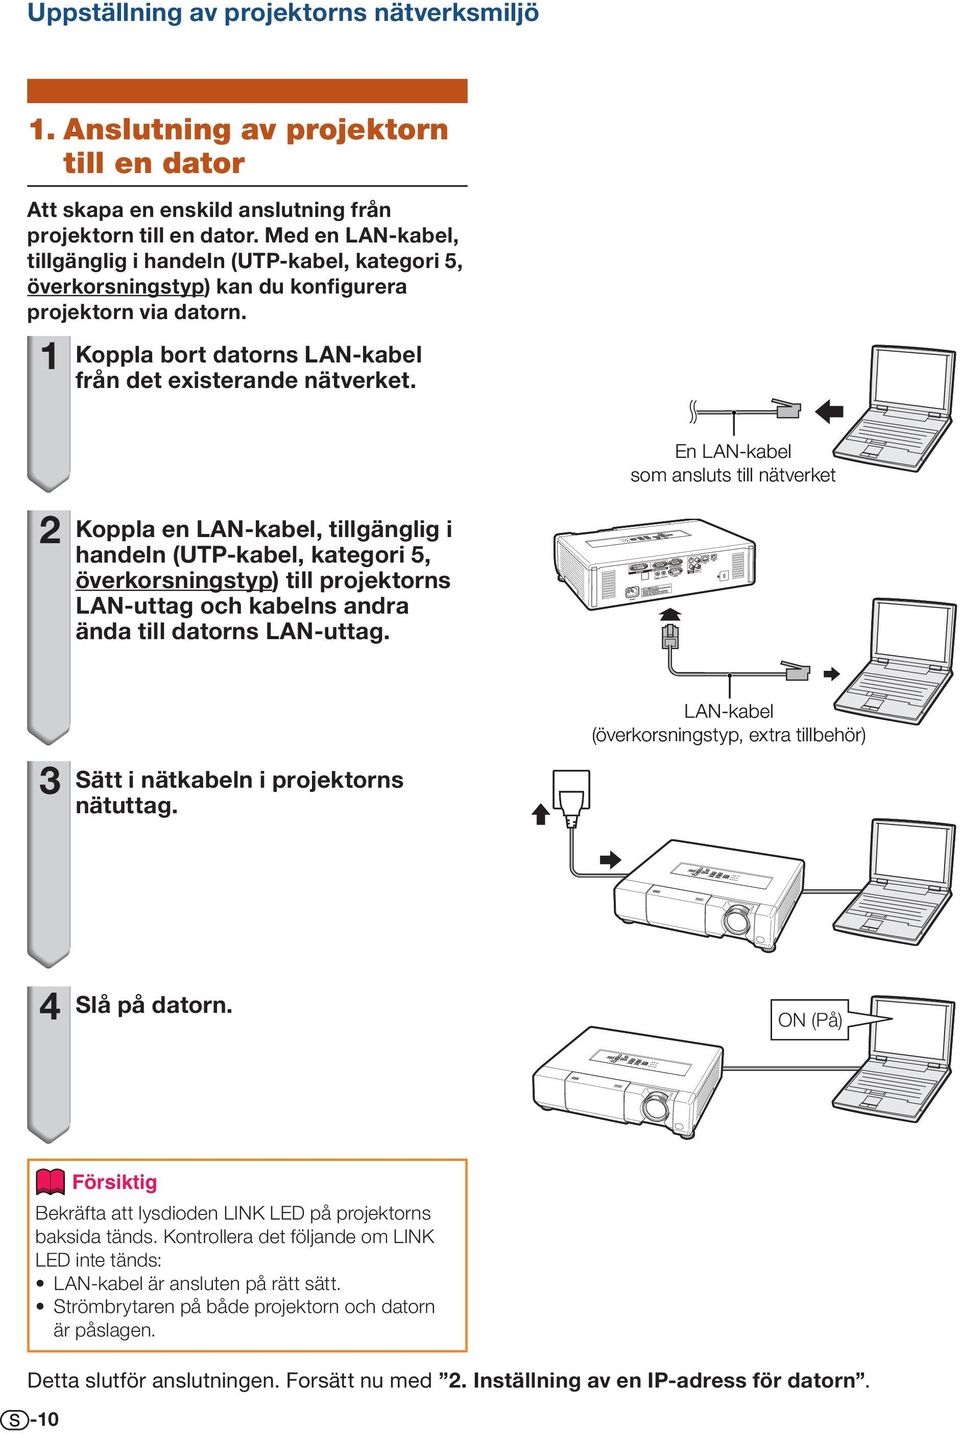 Koppla en LAN-kabel, tillgänglig i handeln (UTP-kabel, kategori 5, överkorsningstyp) till projektorns LAN-uttag och kabelns andra ända till datorns LAN-uttag.